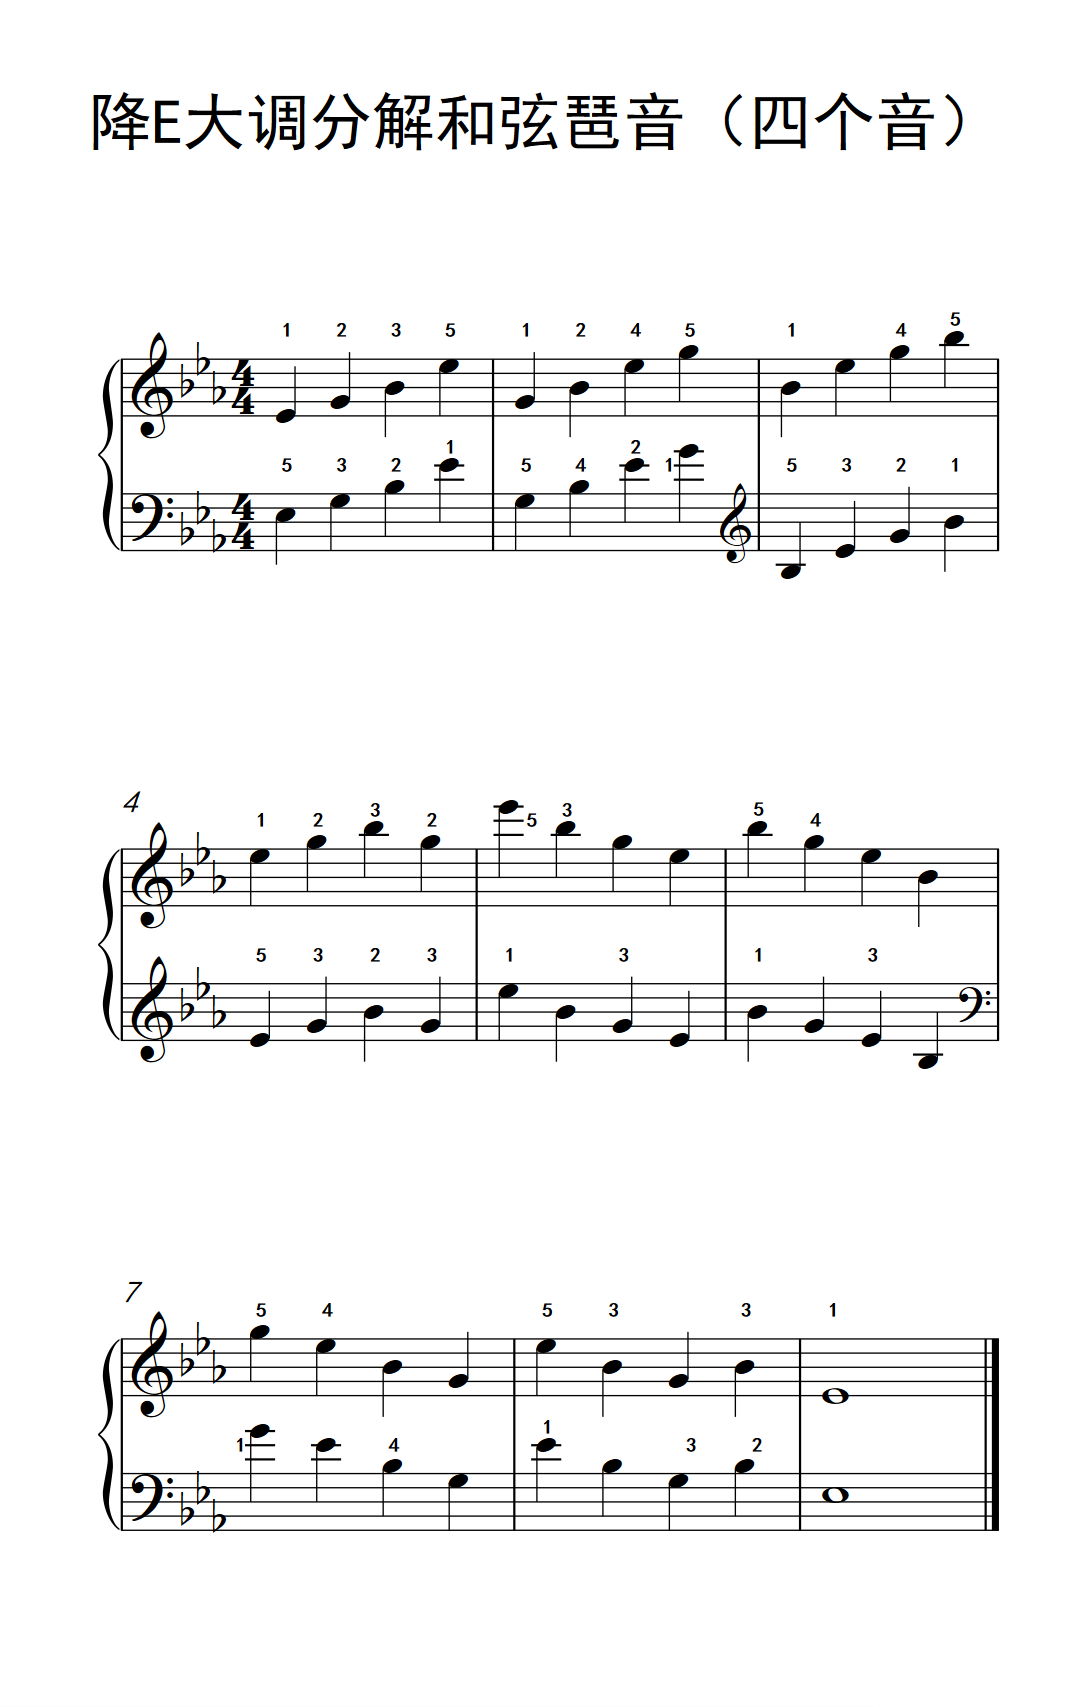 降E大调分解和弦琶音 四个音 孩子们的钢琴